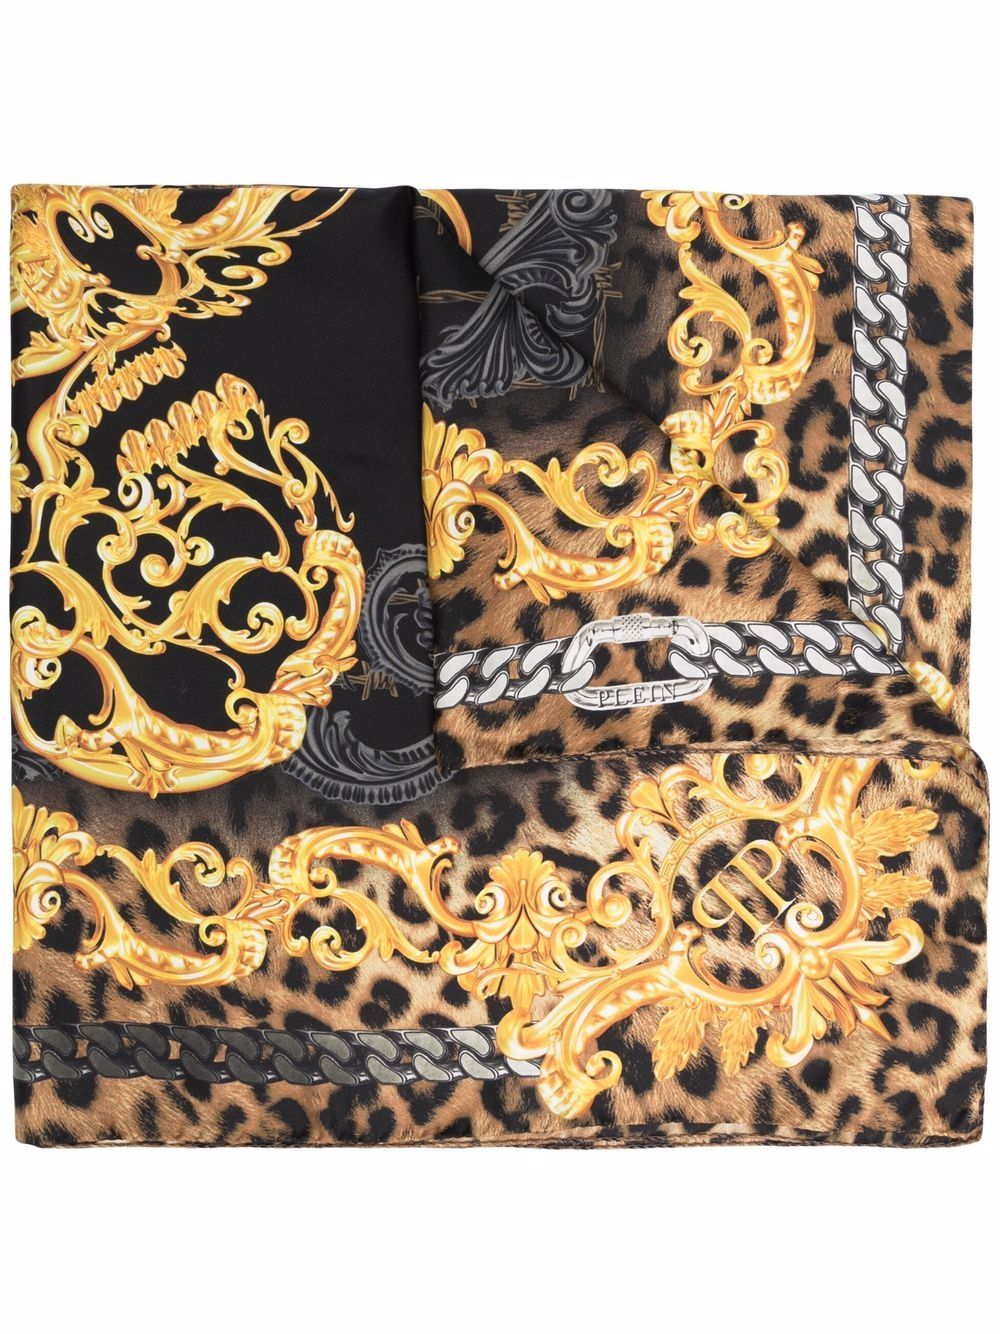 фото Philipp plein платок с леопардовым принтом и узором baroque